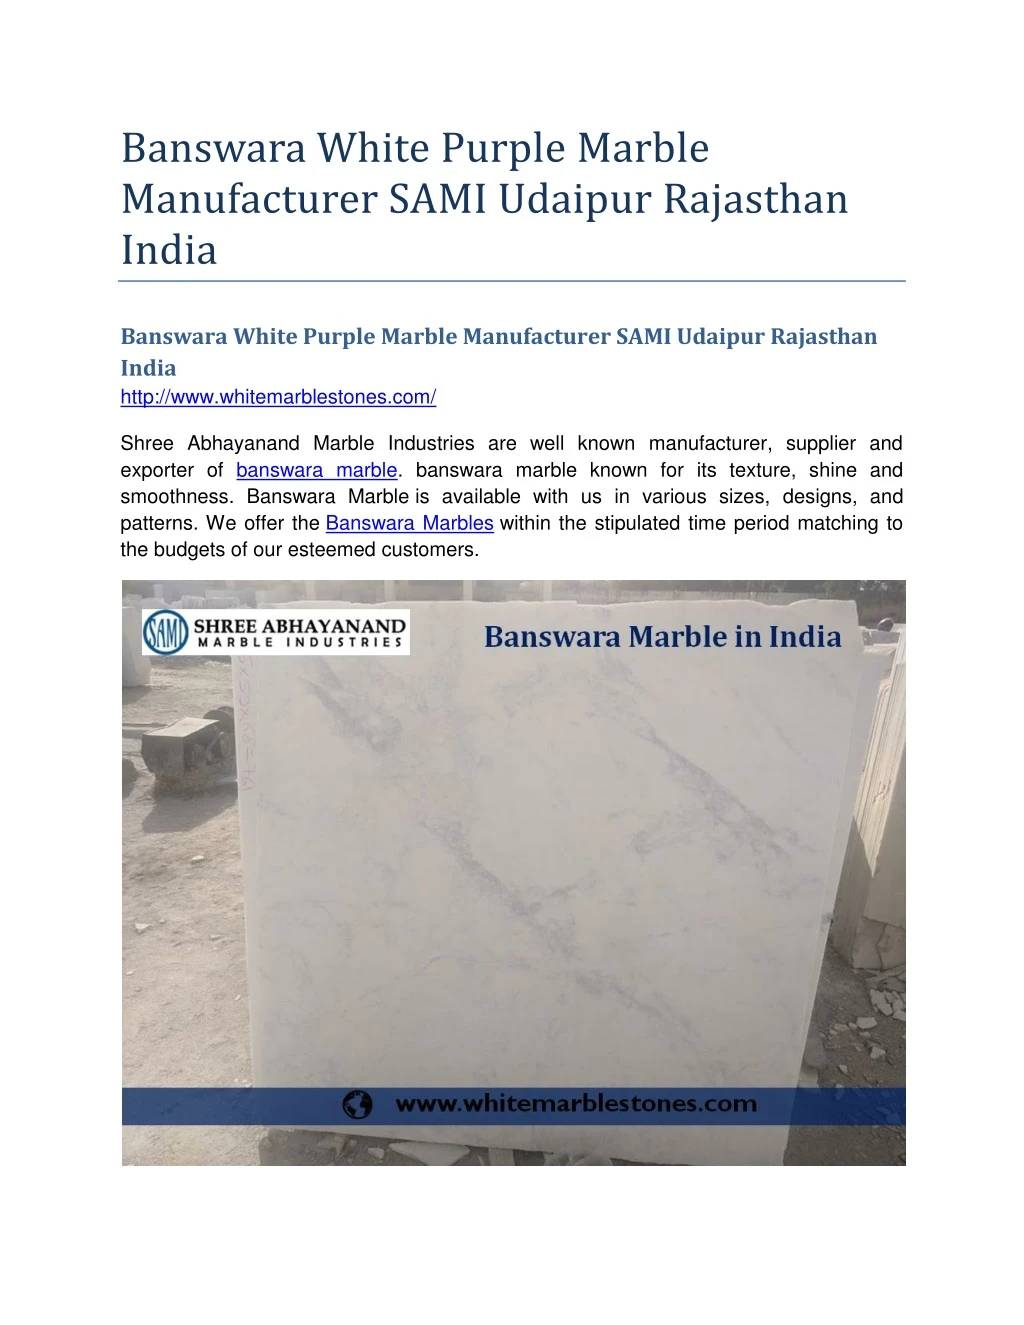 banswara white purple marble manufacturer sami